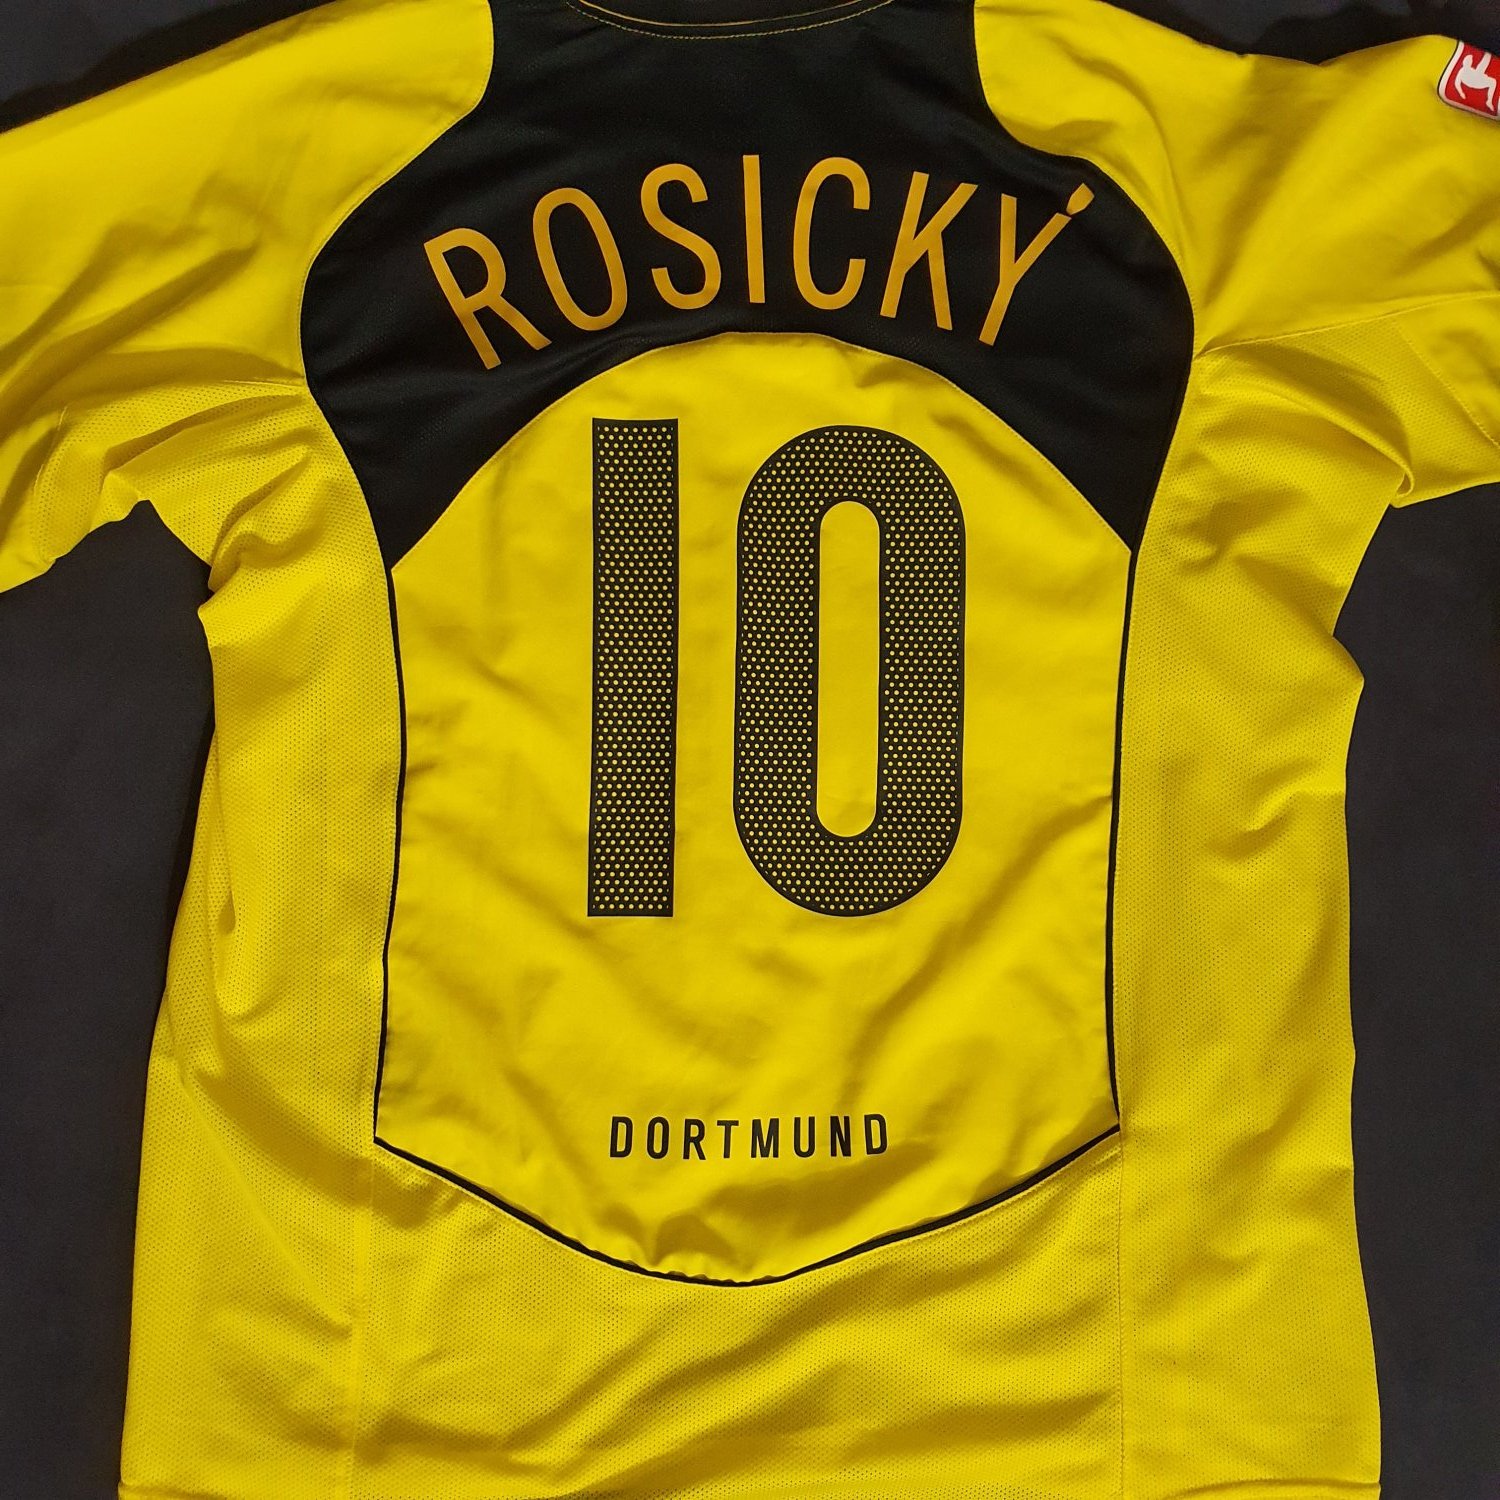 Borussia Dortmund Home maglia di calcio 2004 - 2005. Sponsored by e.on